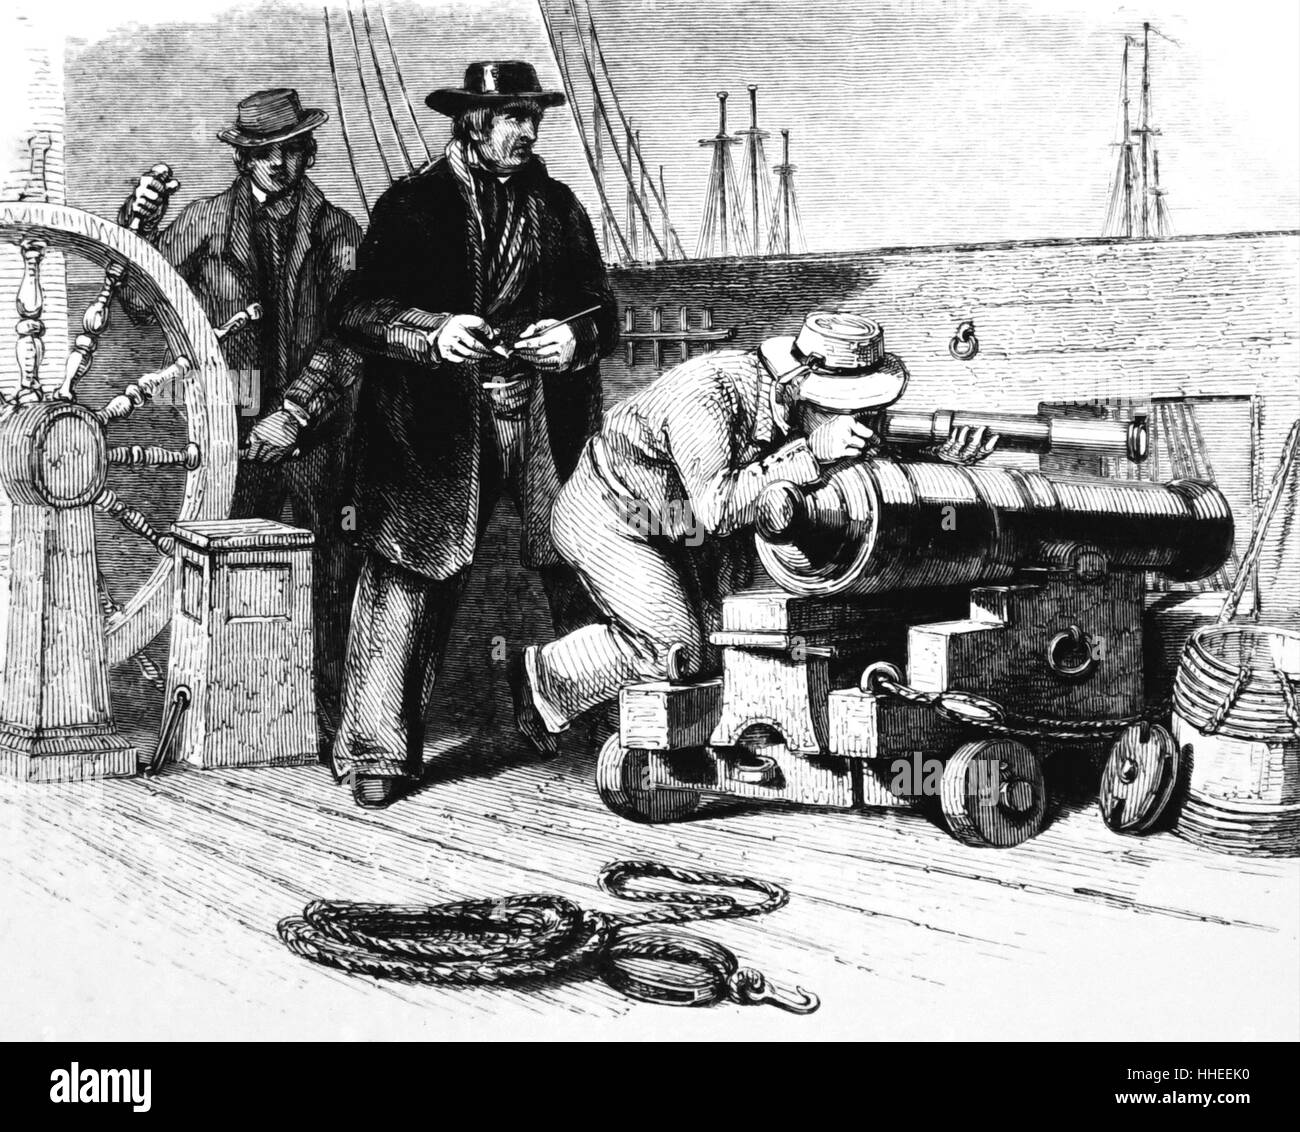 Kupferstich von Tom Saunders, an Bord ein Ostindienfahrer, ein Glas zu verwenden, um ein anderes Schiff durch die Gunport zu beobachten. Vom 19. Jahrhundert Stockfoto